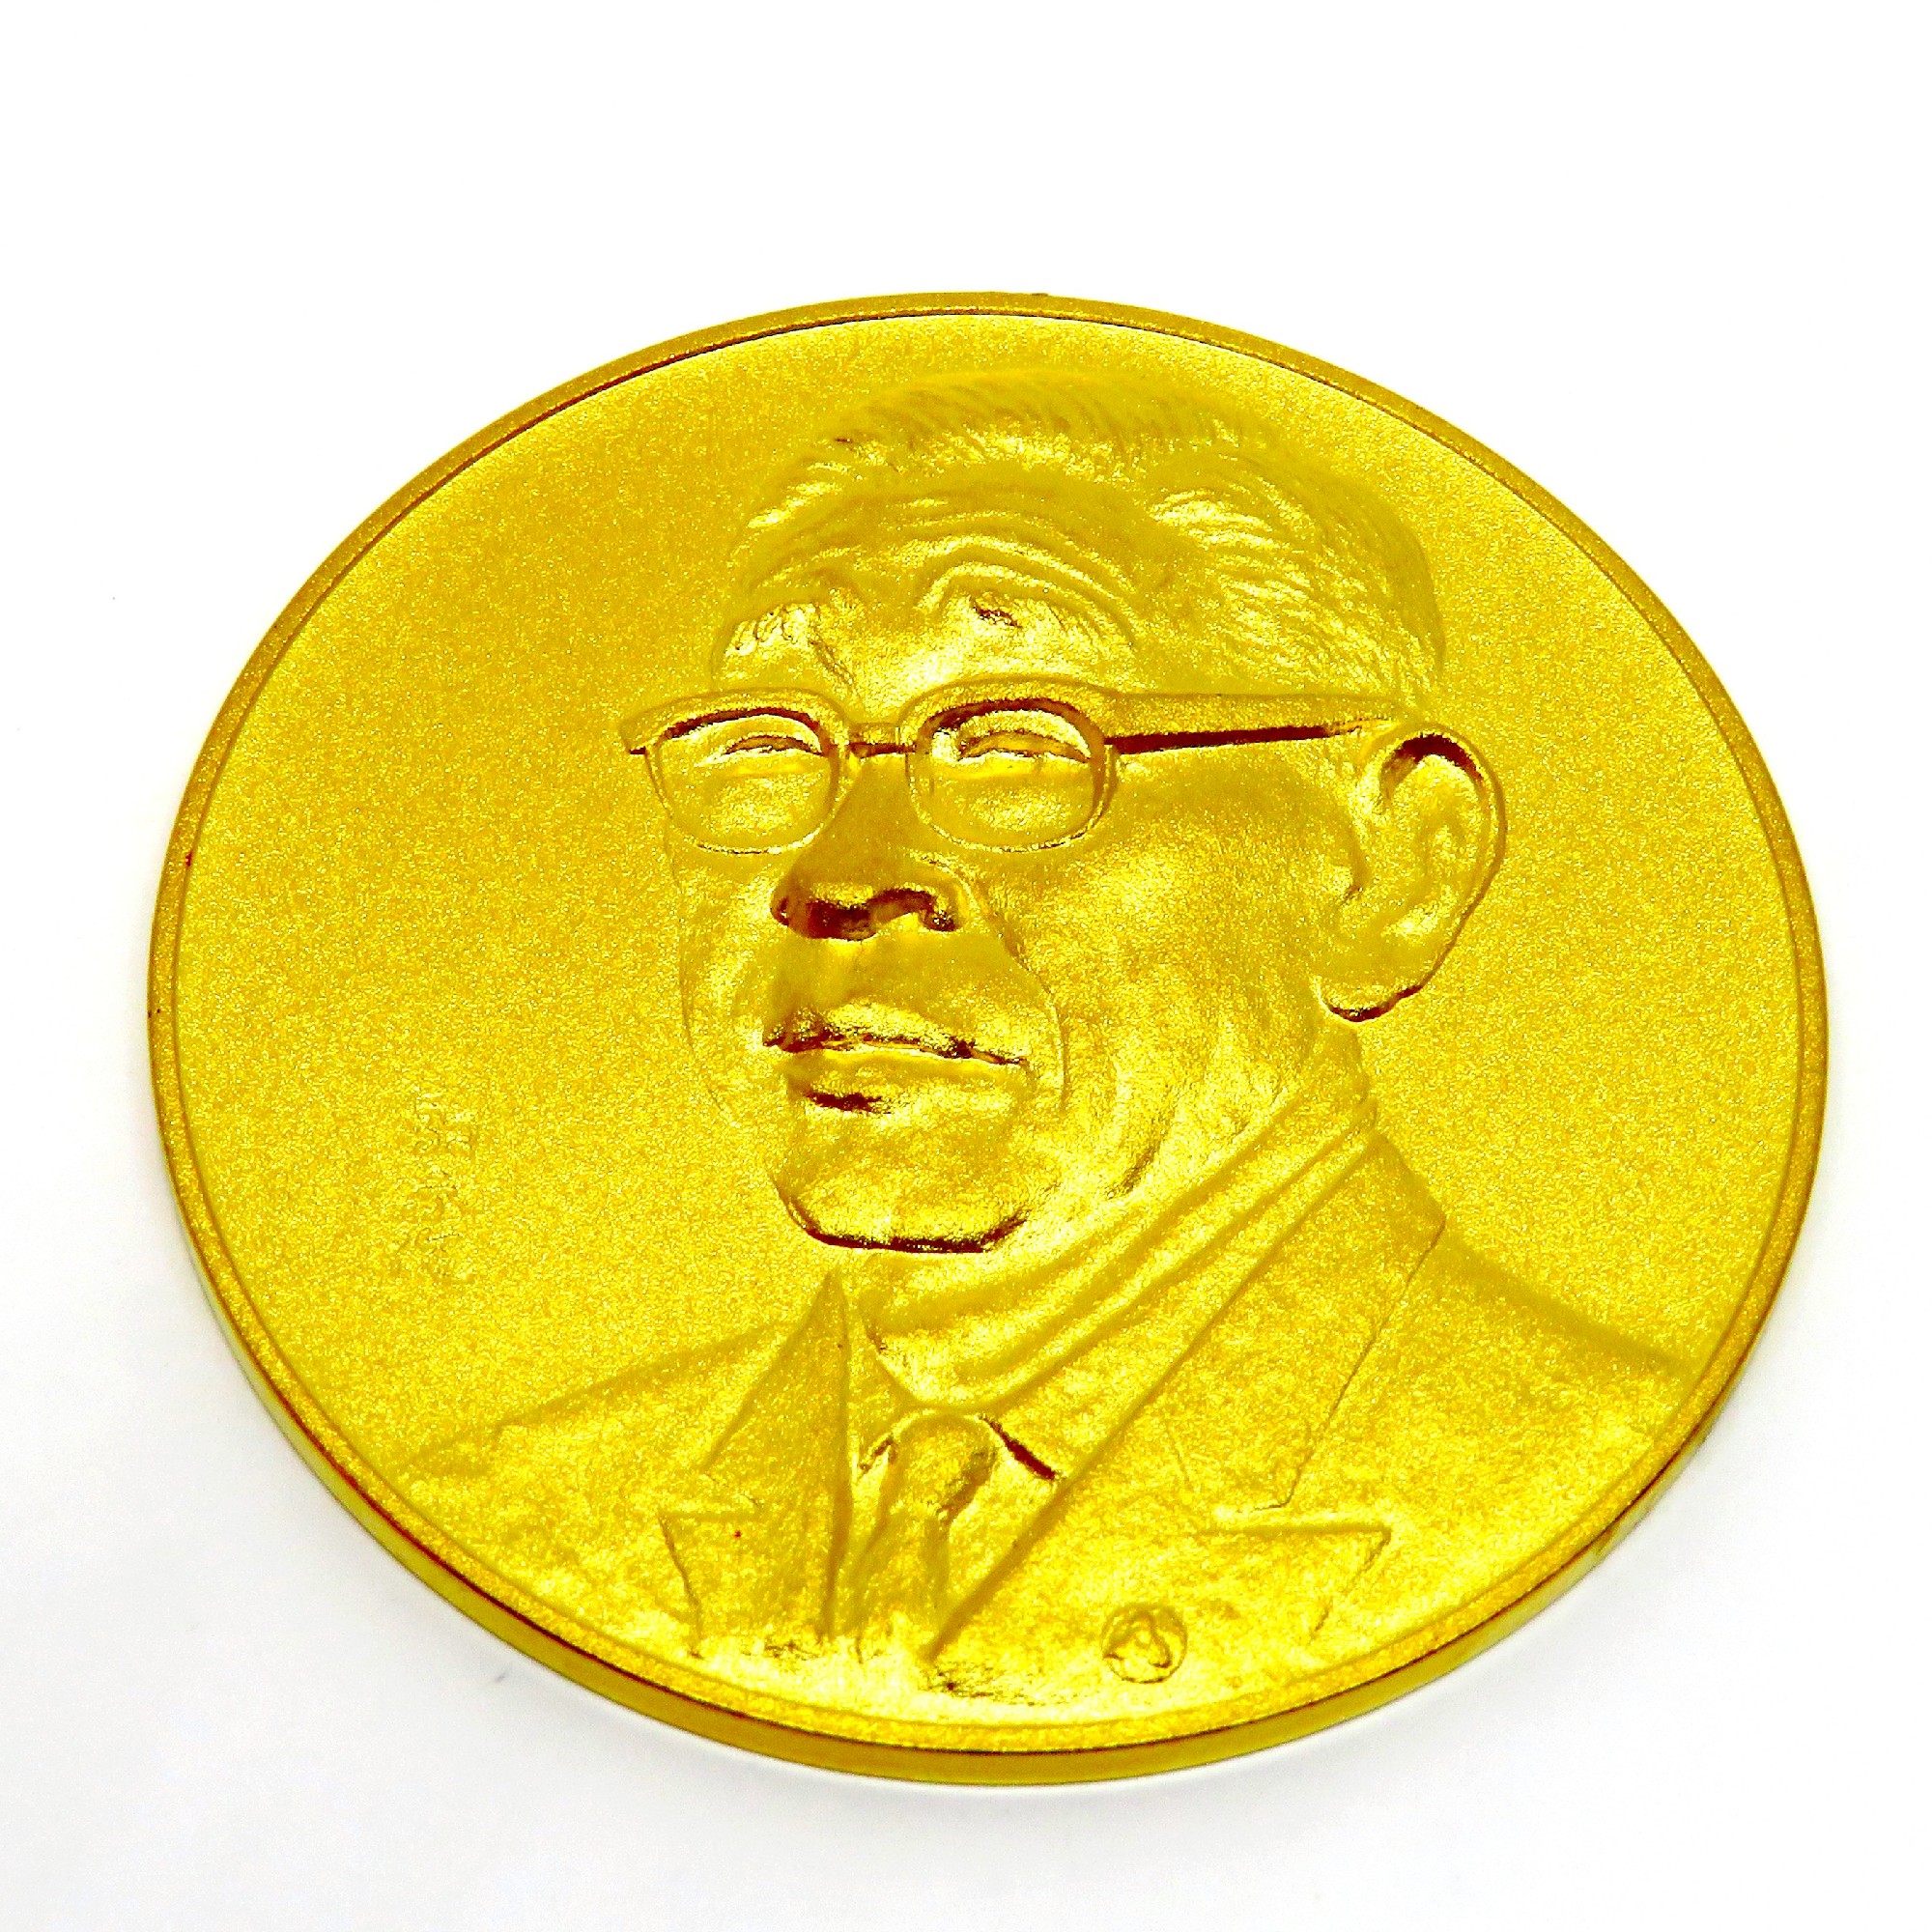 松下幸之助様が、刻印された純金メダルを買い取りさせて頂きました。｜池田次良